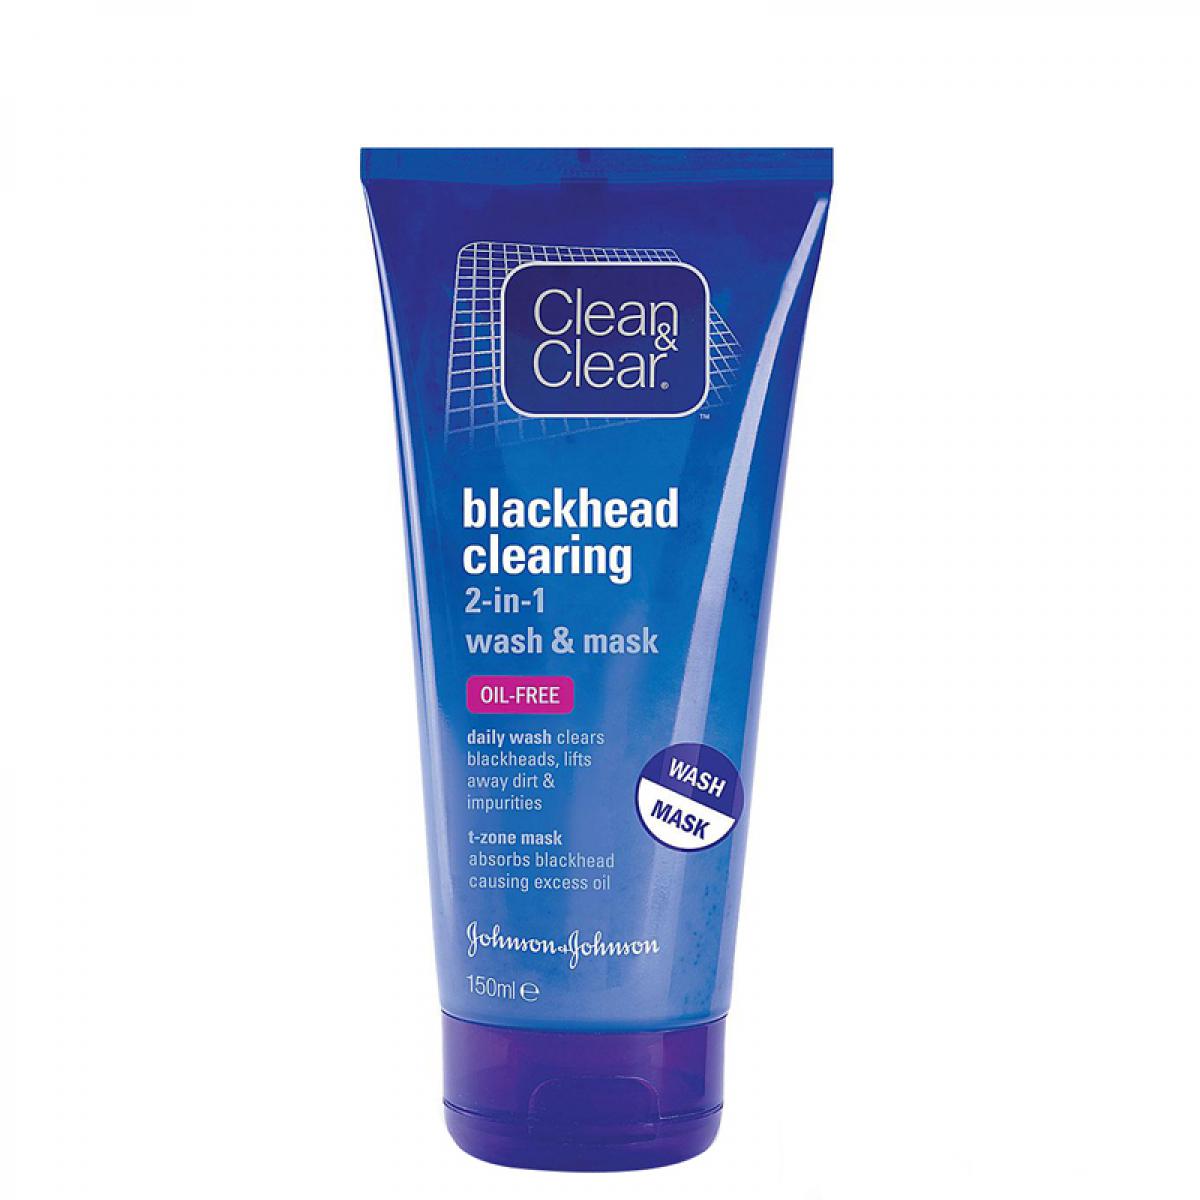 ژل اسکراب روزانه مدل Blackhead Clearing - Clean And Clear Blackhead Clearing Gel Scrub 150ml